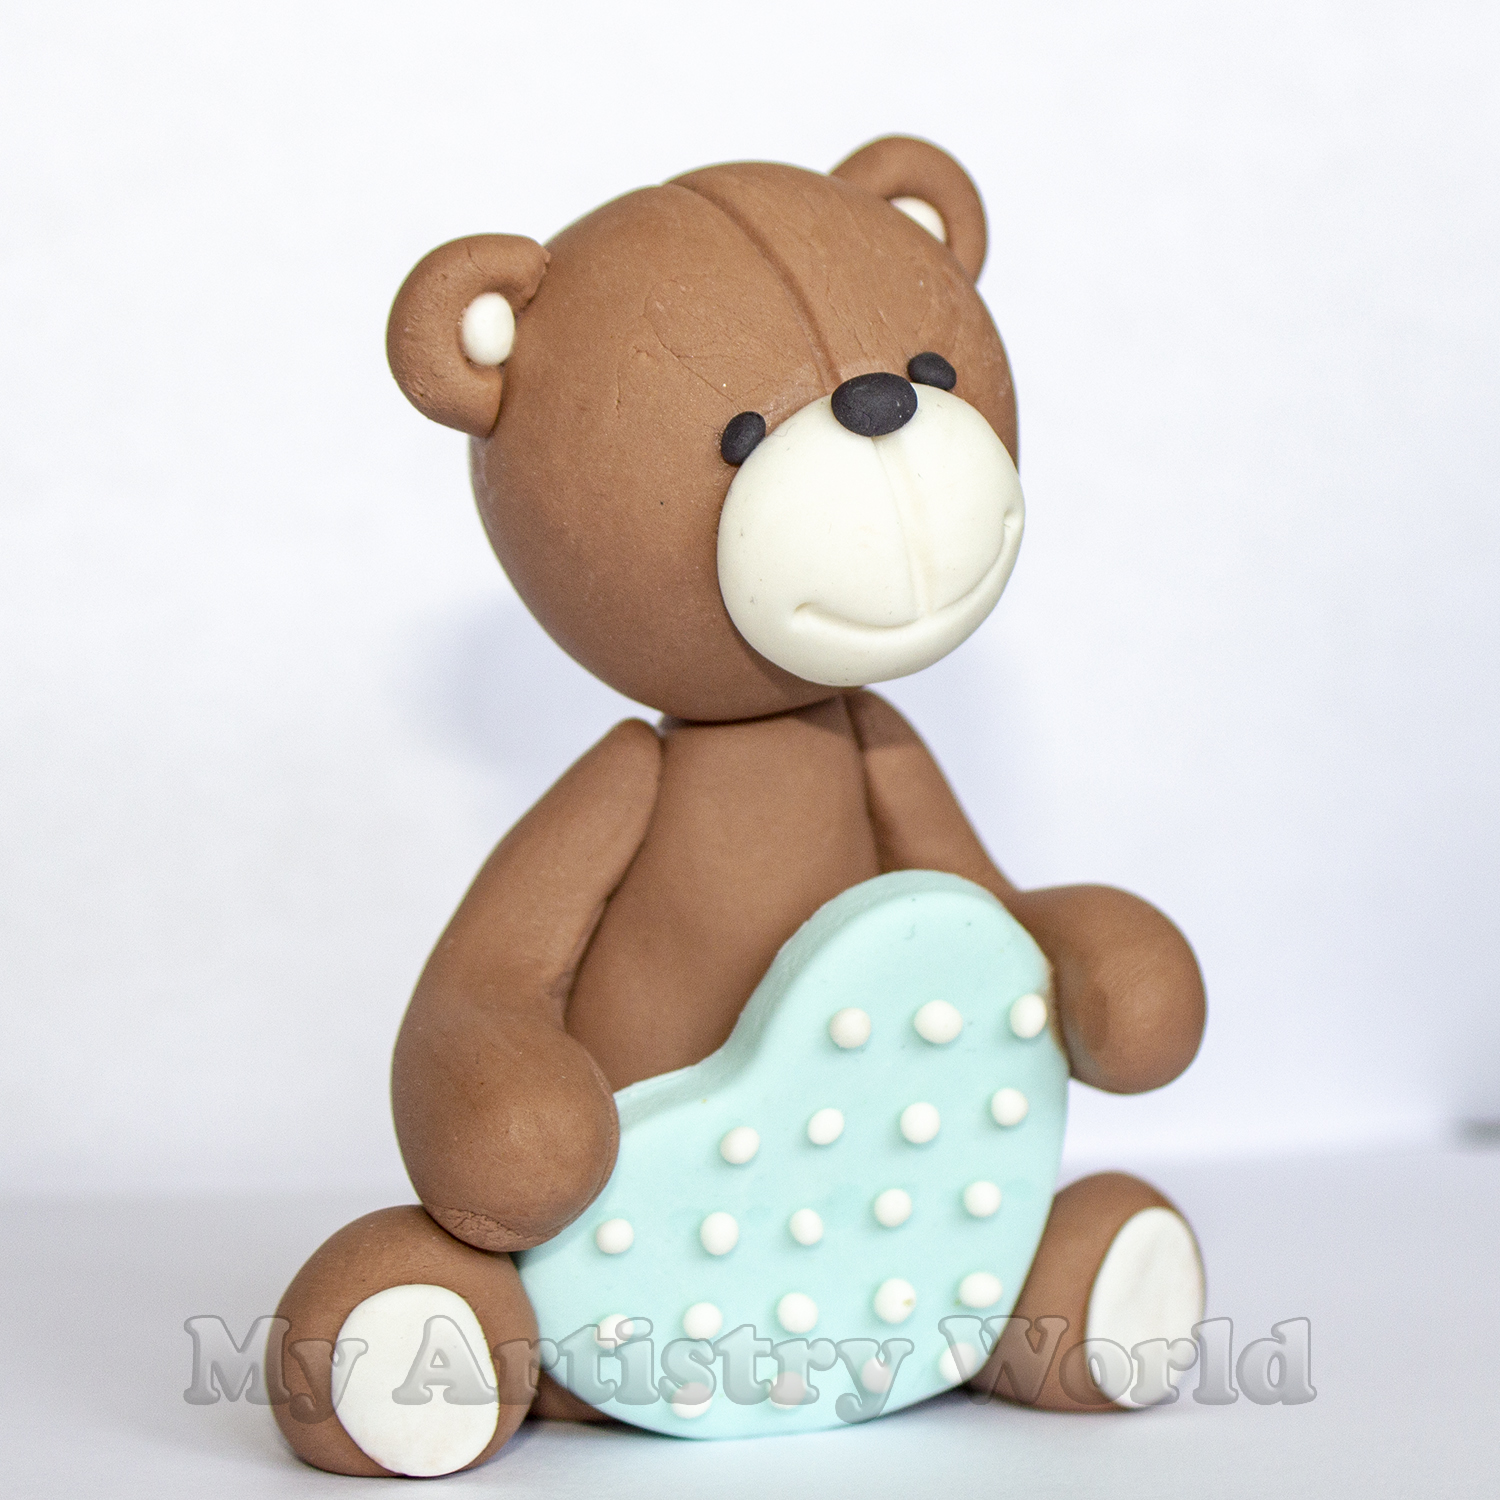 Bear holding Heart cake topper - My Artistry World